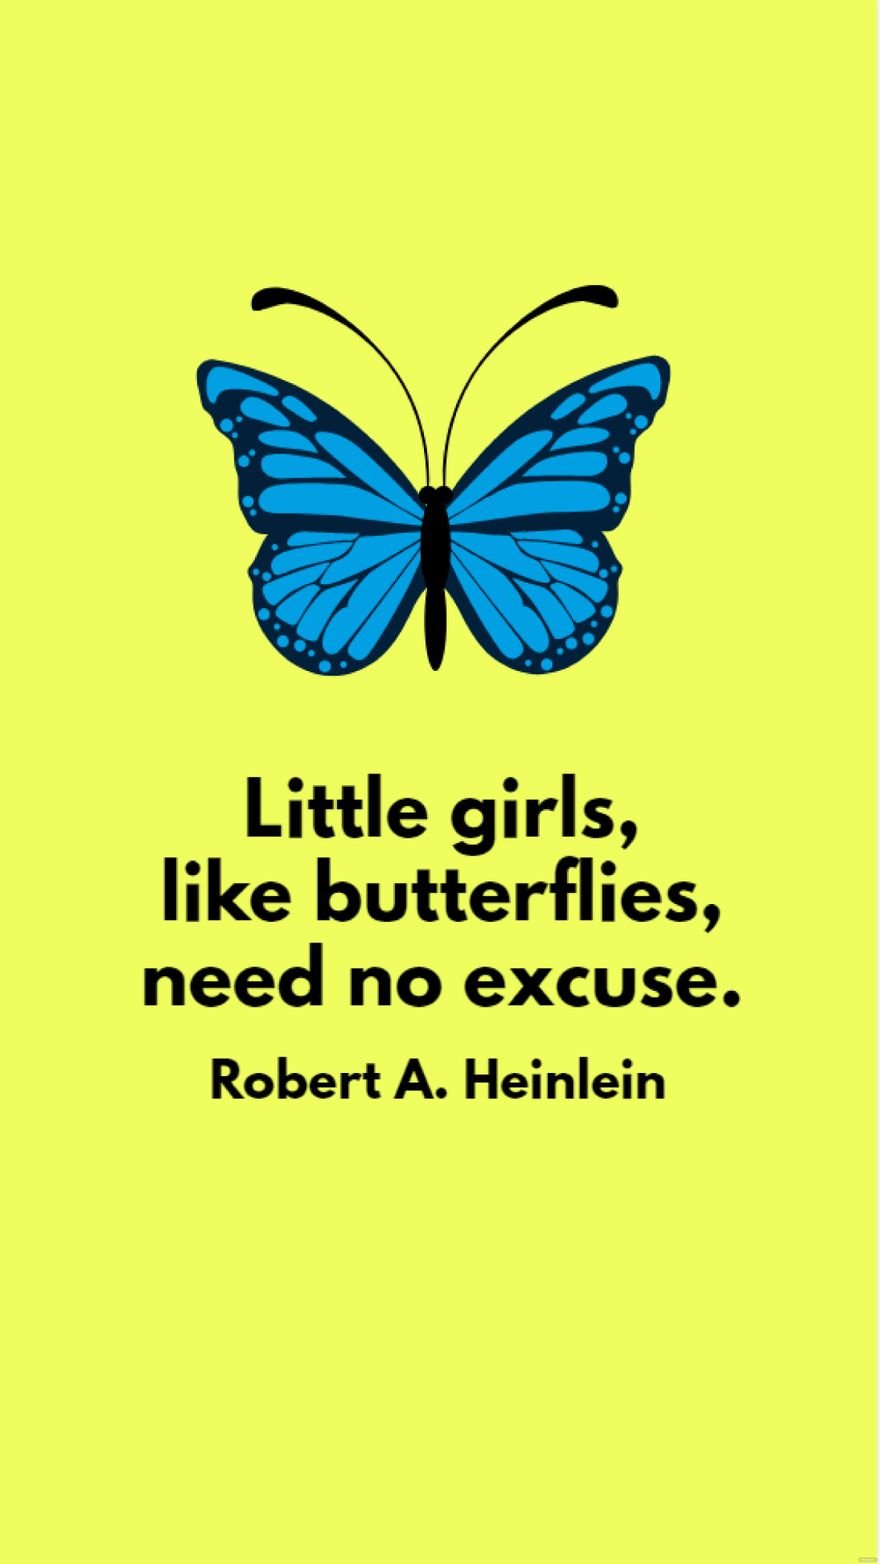 Free Robert A. Heinlein - Little girls, like butterflies, need no excuse.